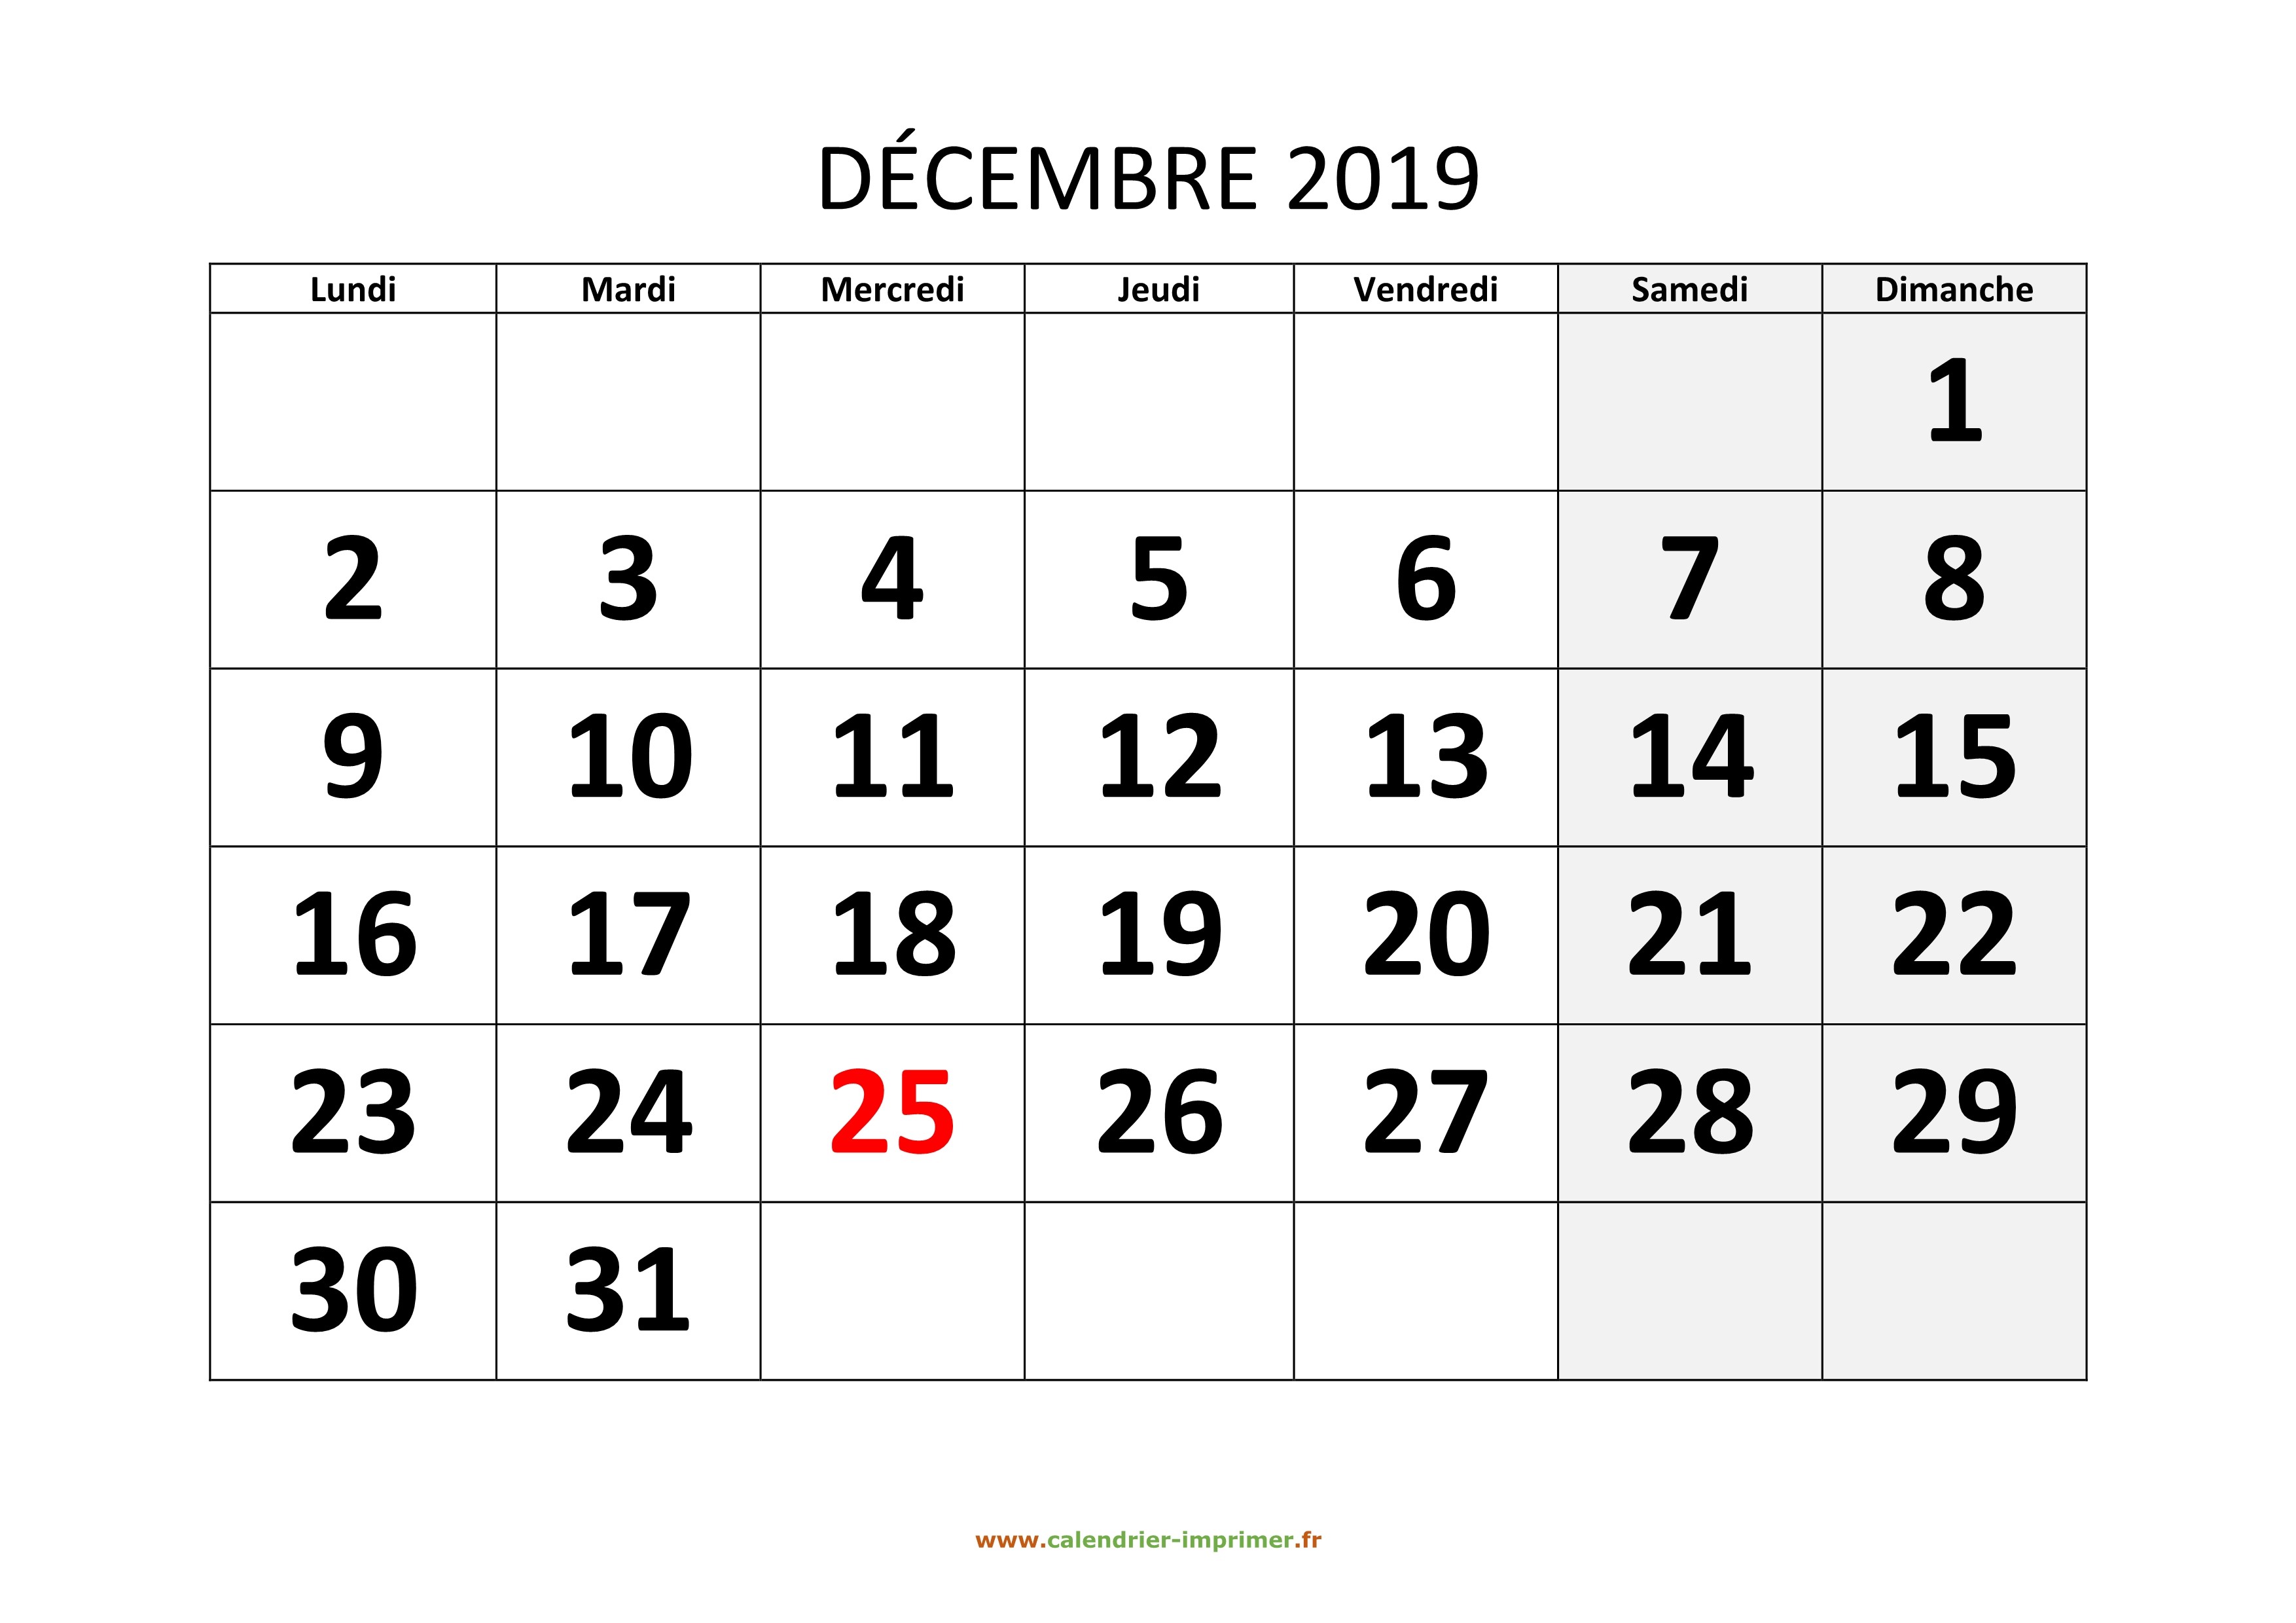 Calendrier Hiver 2019-2020 - Décembre 2019